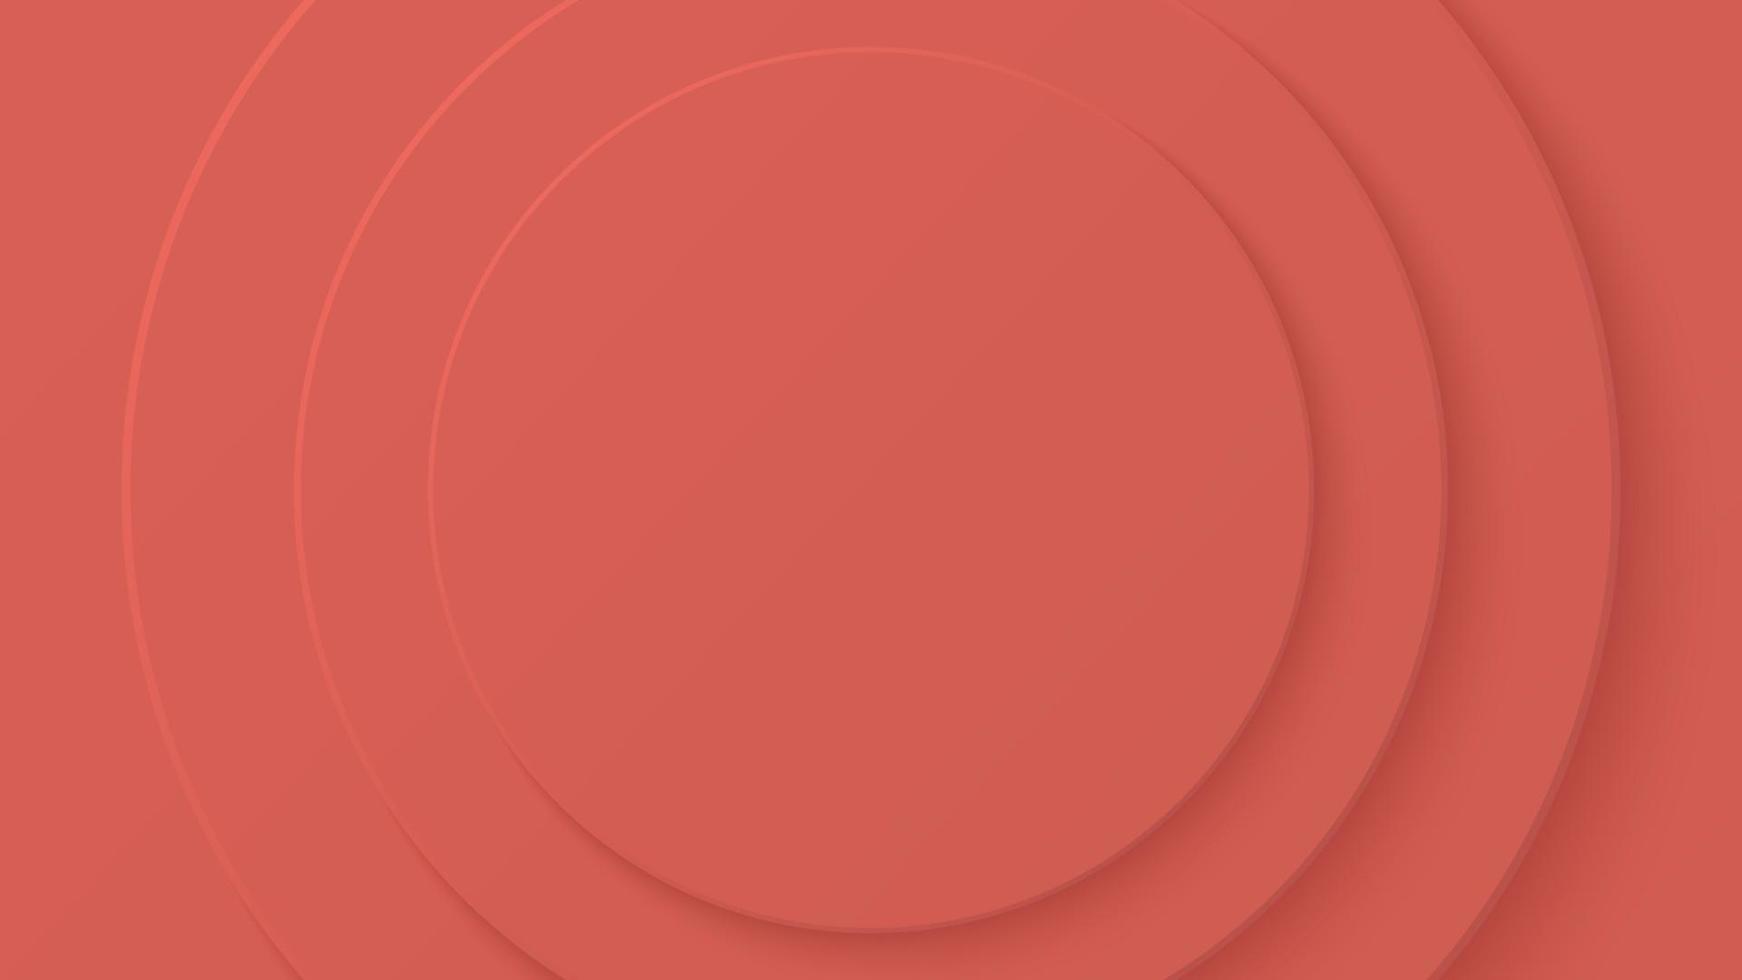 abstrakt papper cirkel röd orange Färg trender bakgrund design. vektor illustration. eps10